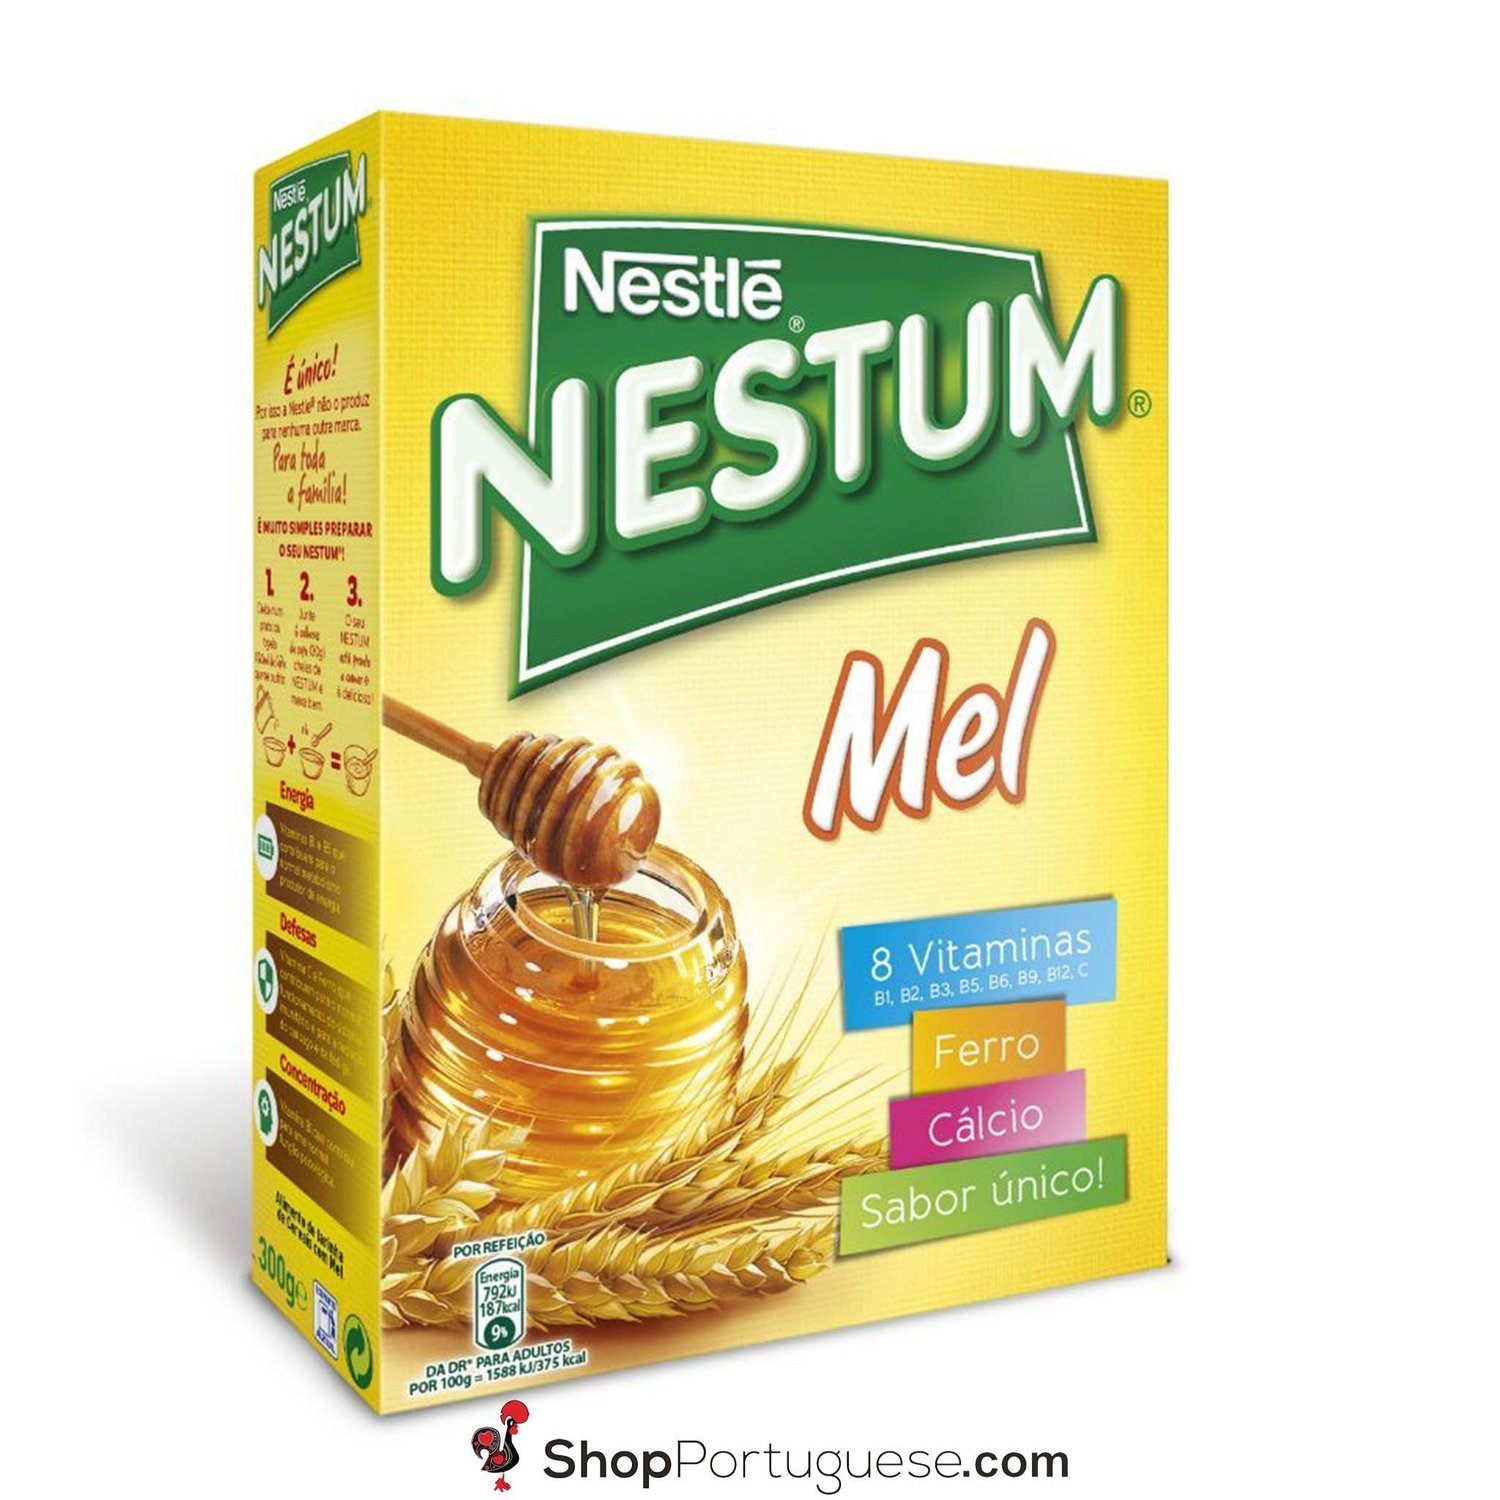 Nestum com Mel cereal 300g